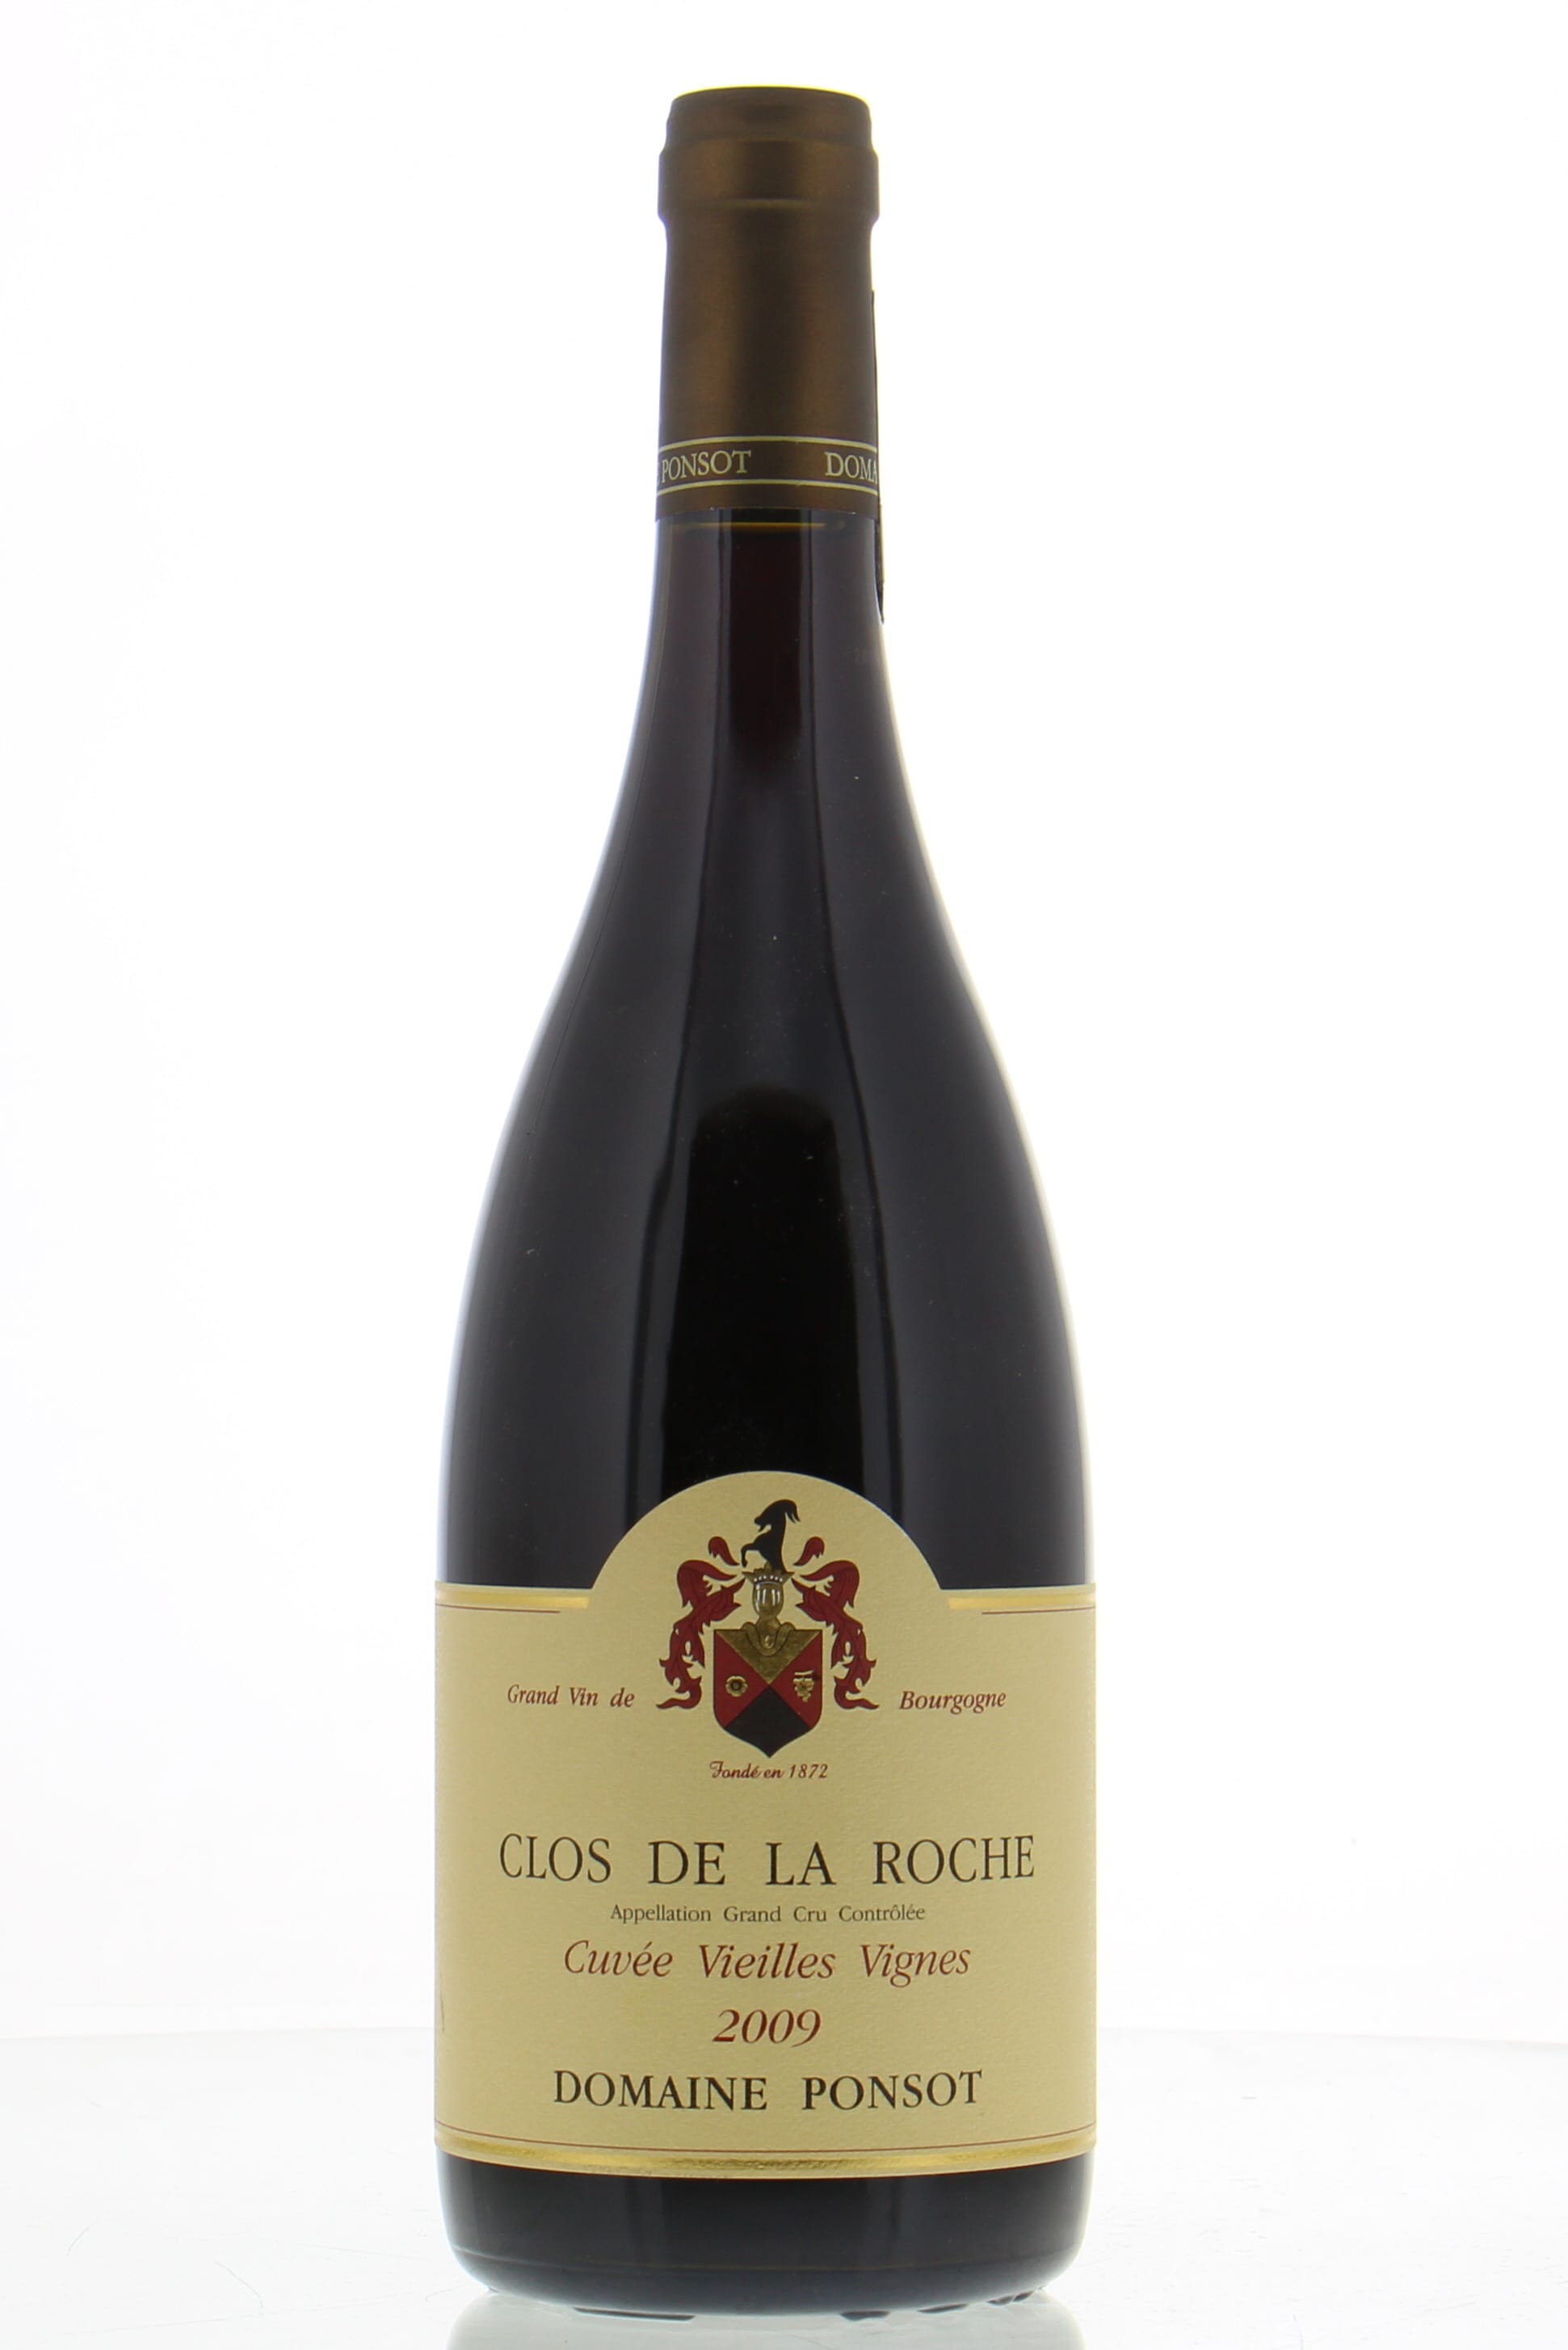 Domaine Ponsot - Clos de la Roche cuvee Vieille Vignes 2009